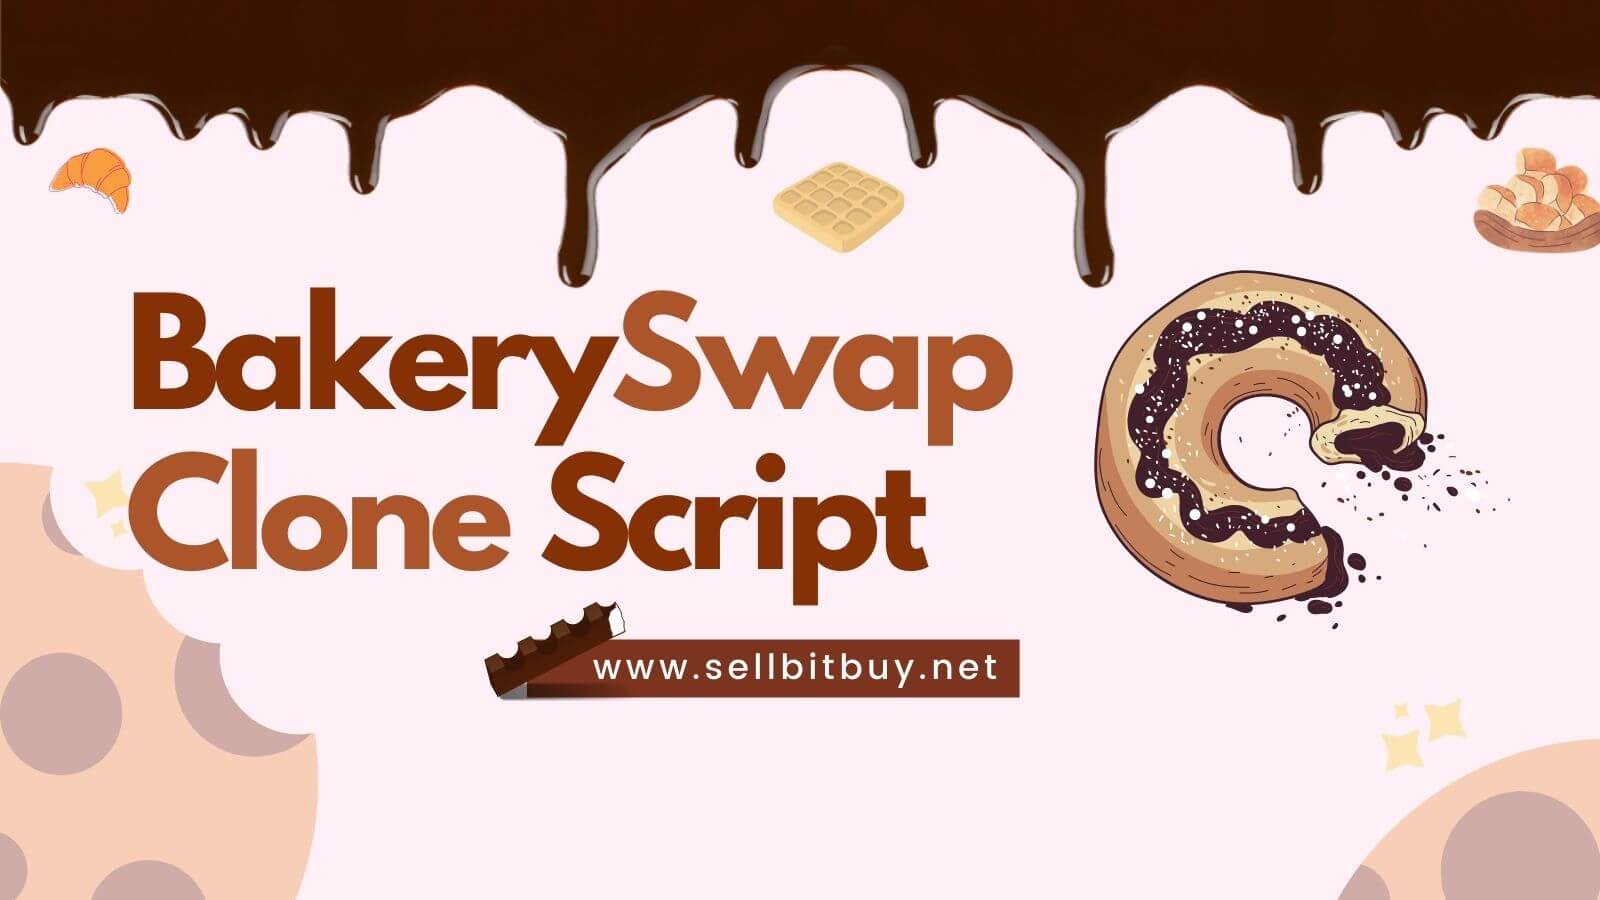 BakerySwap Clone Script - Create Automated Market Maker (AMM) Like BakerySwap On Binance Smart Chain (BSC)